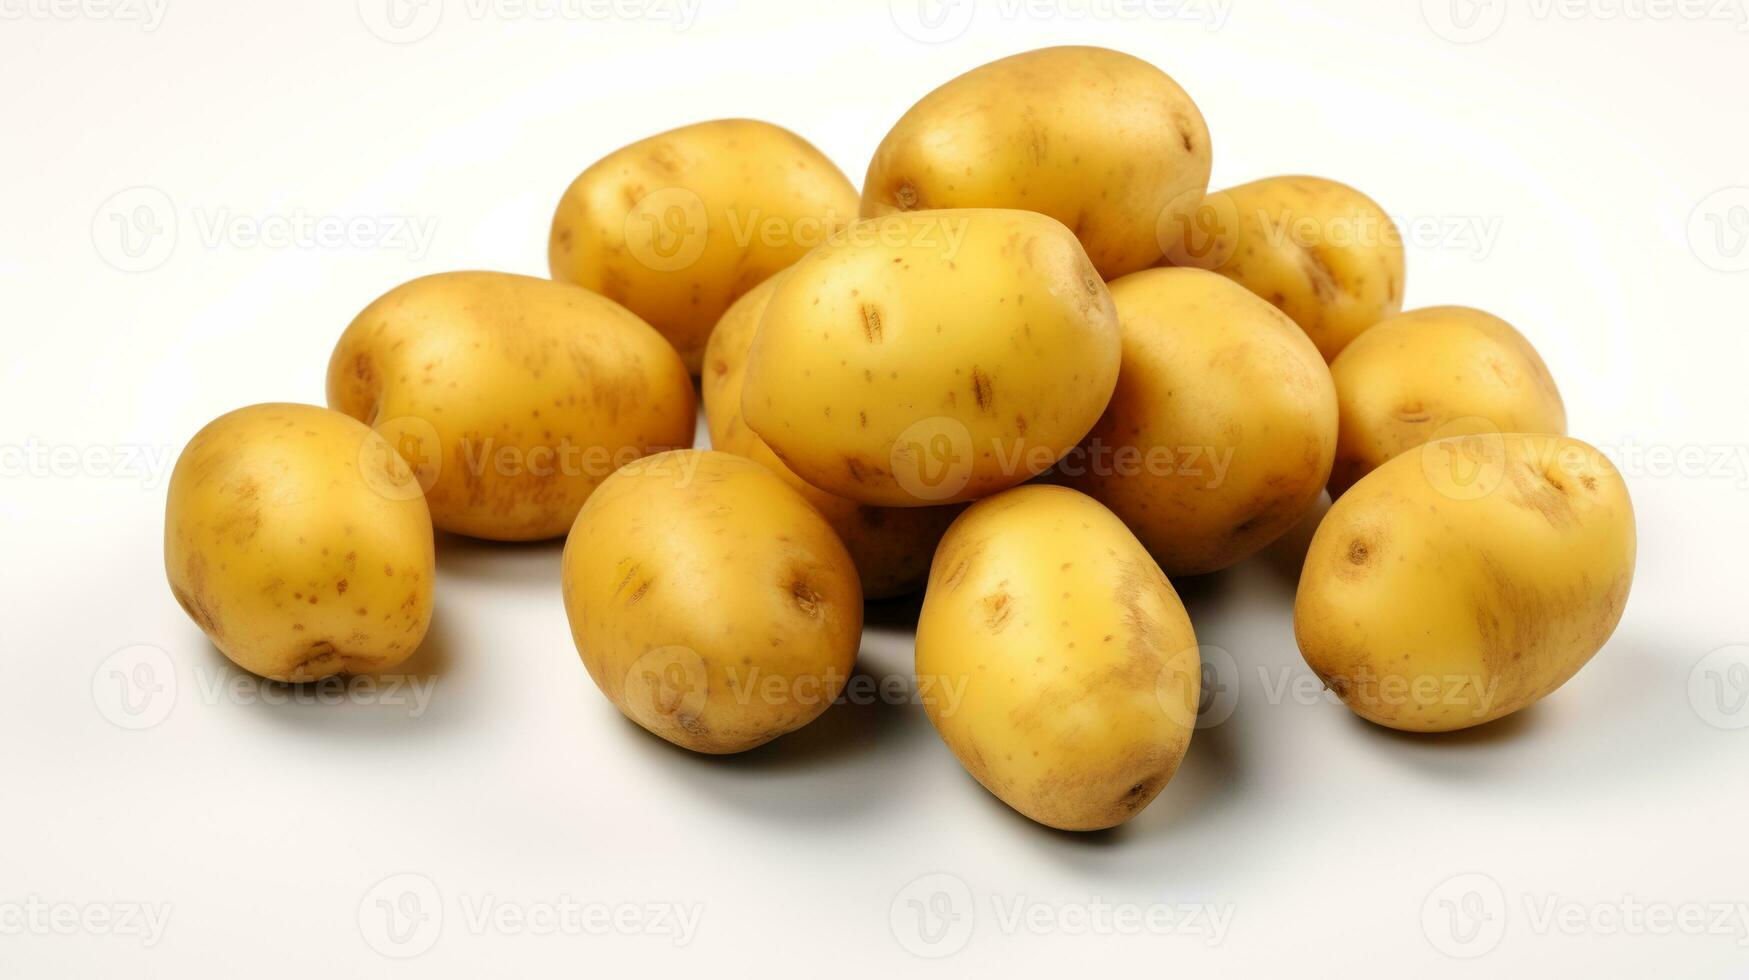 Foto av potatisar isolerat på vit bakgrund